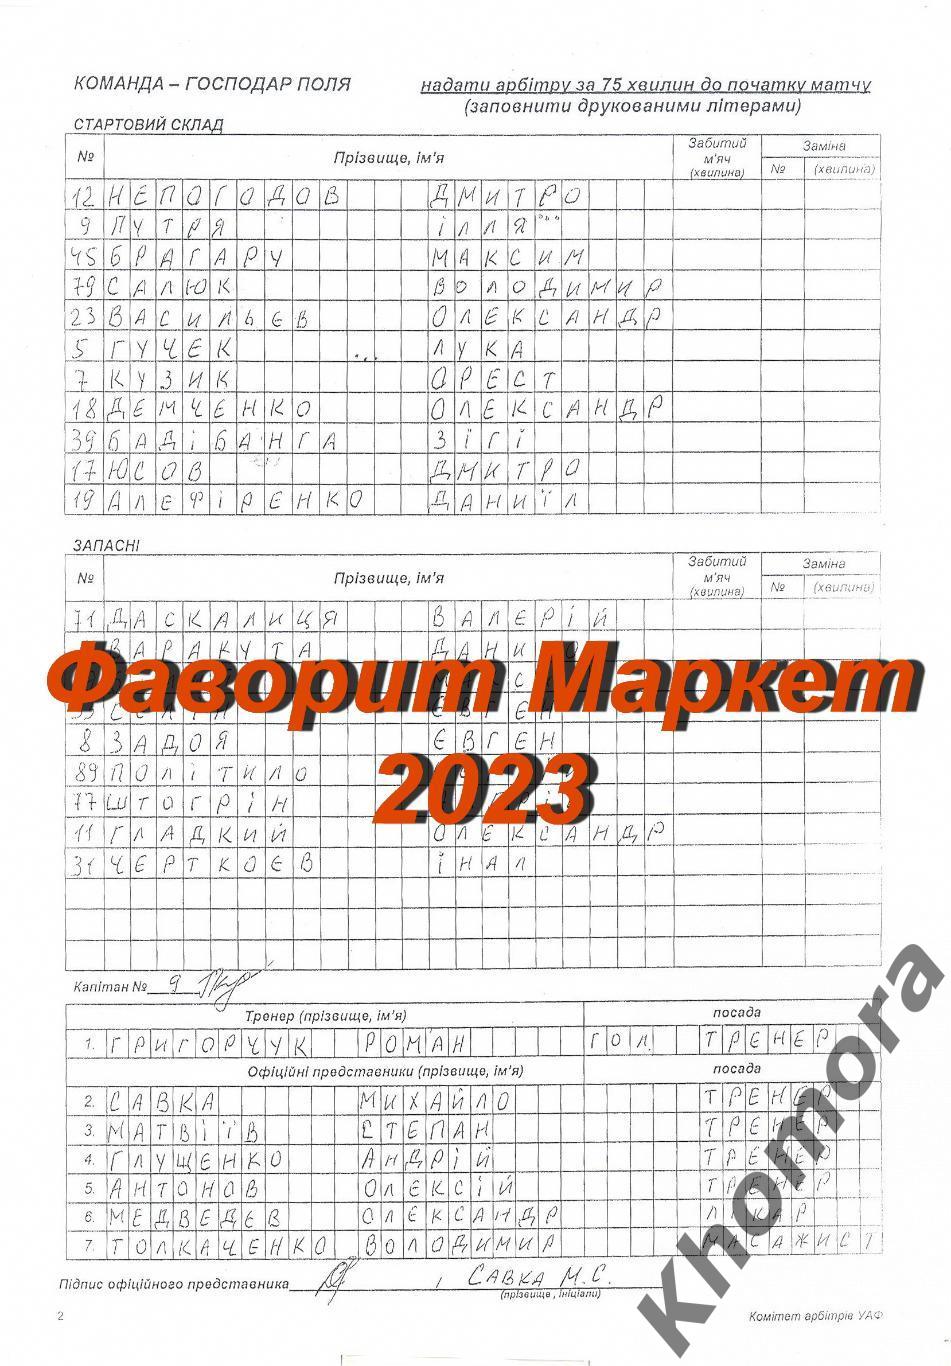 Черноморец (Одесса) - Металлист 1925 (Харьков) 11.03.2023 - стартовый протокол